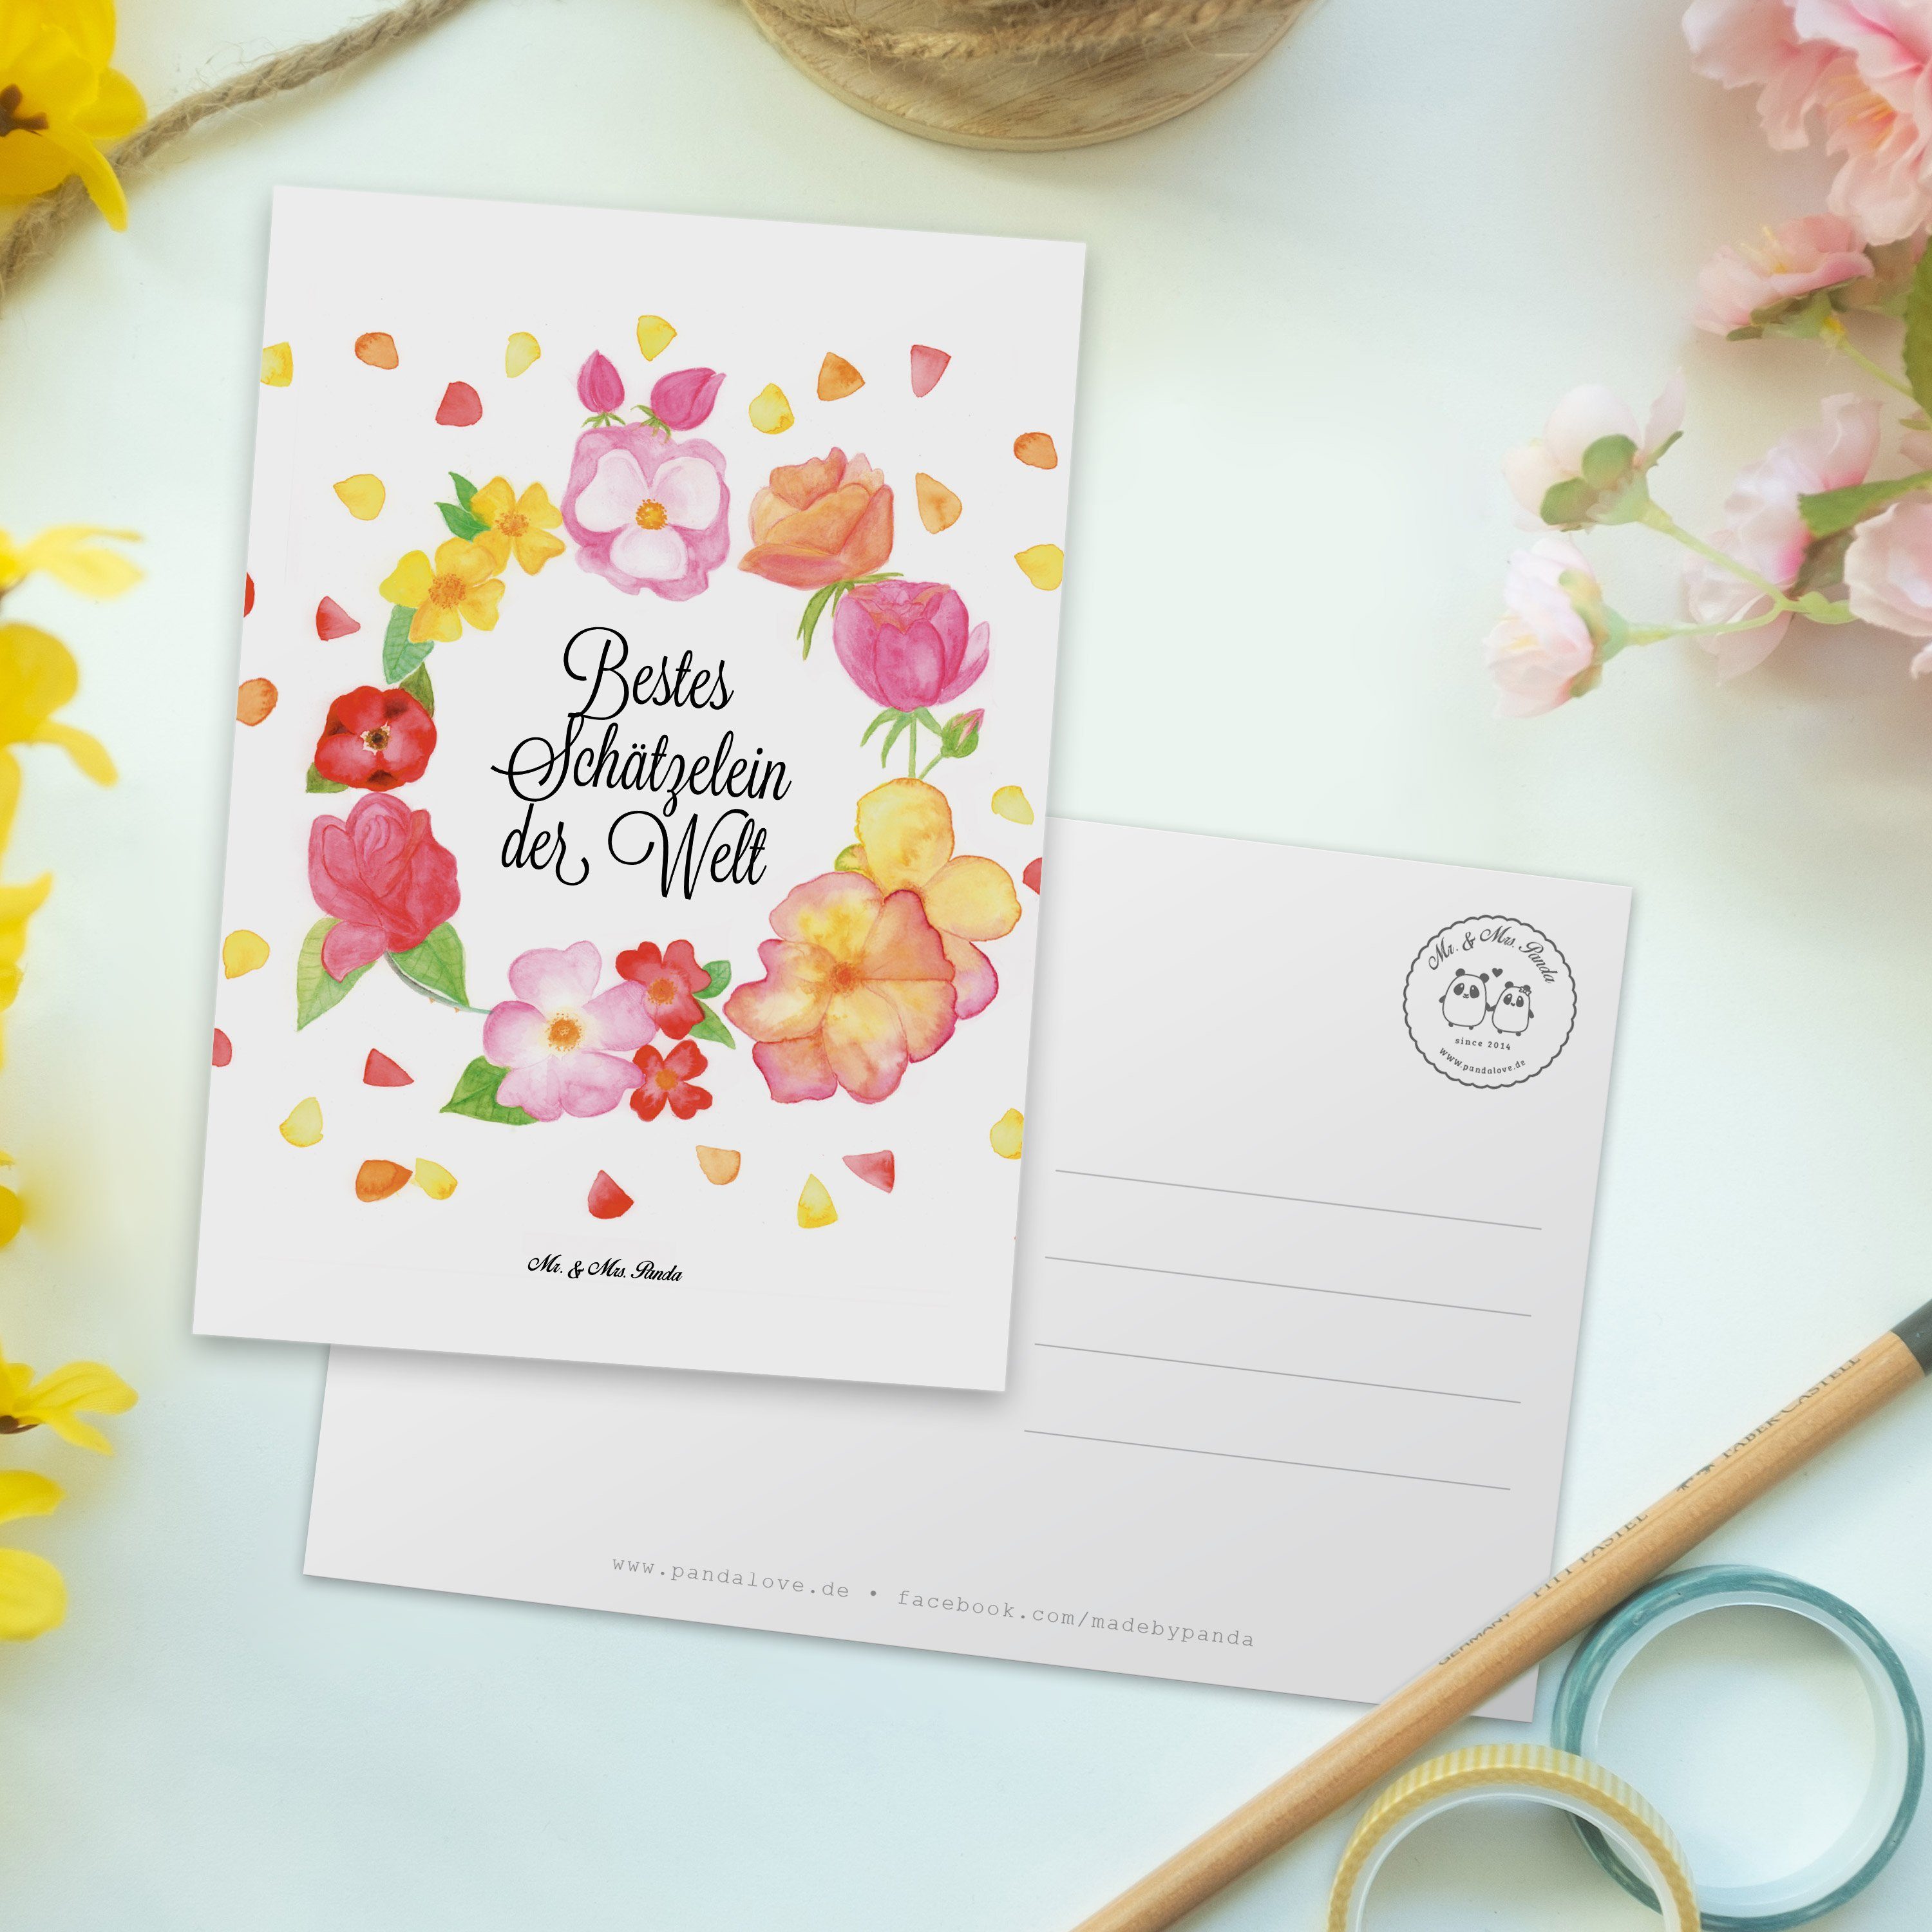 Mr. & Mrs. Panda - Blumen Weiß - Postkarte Liebe Ansi Karte, Geschenk, Schätzelein Mann, Flower